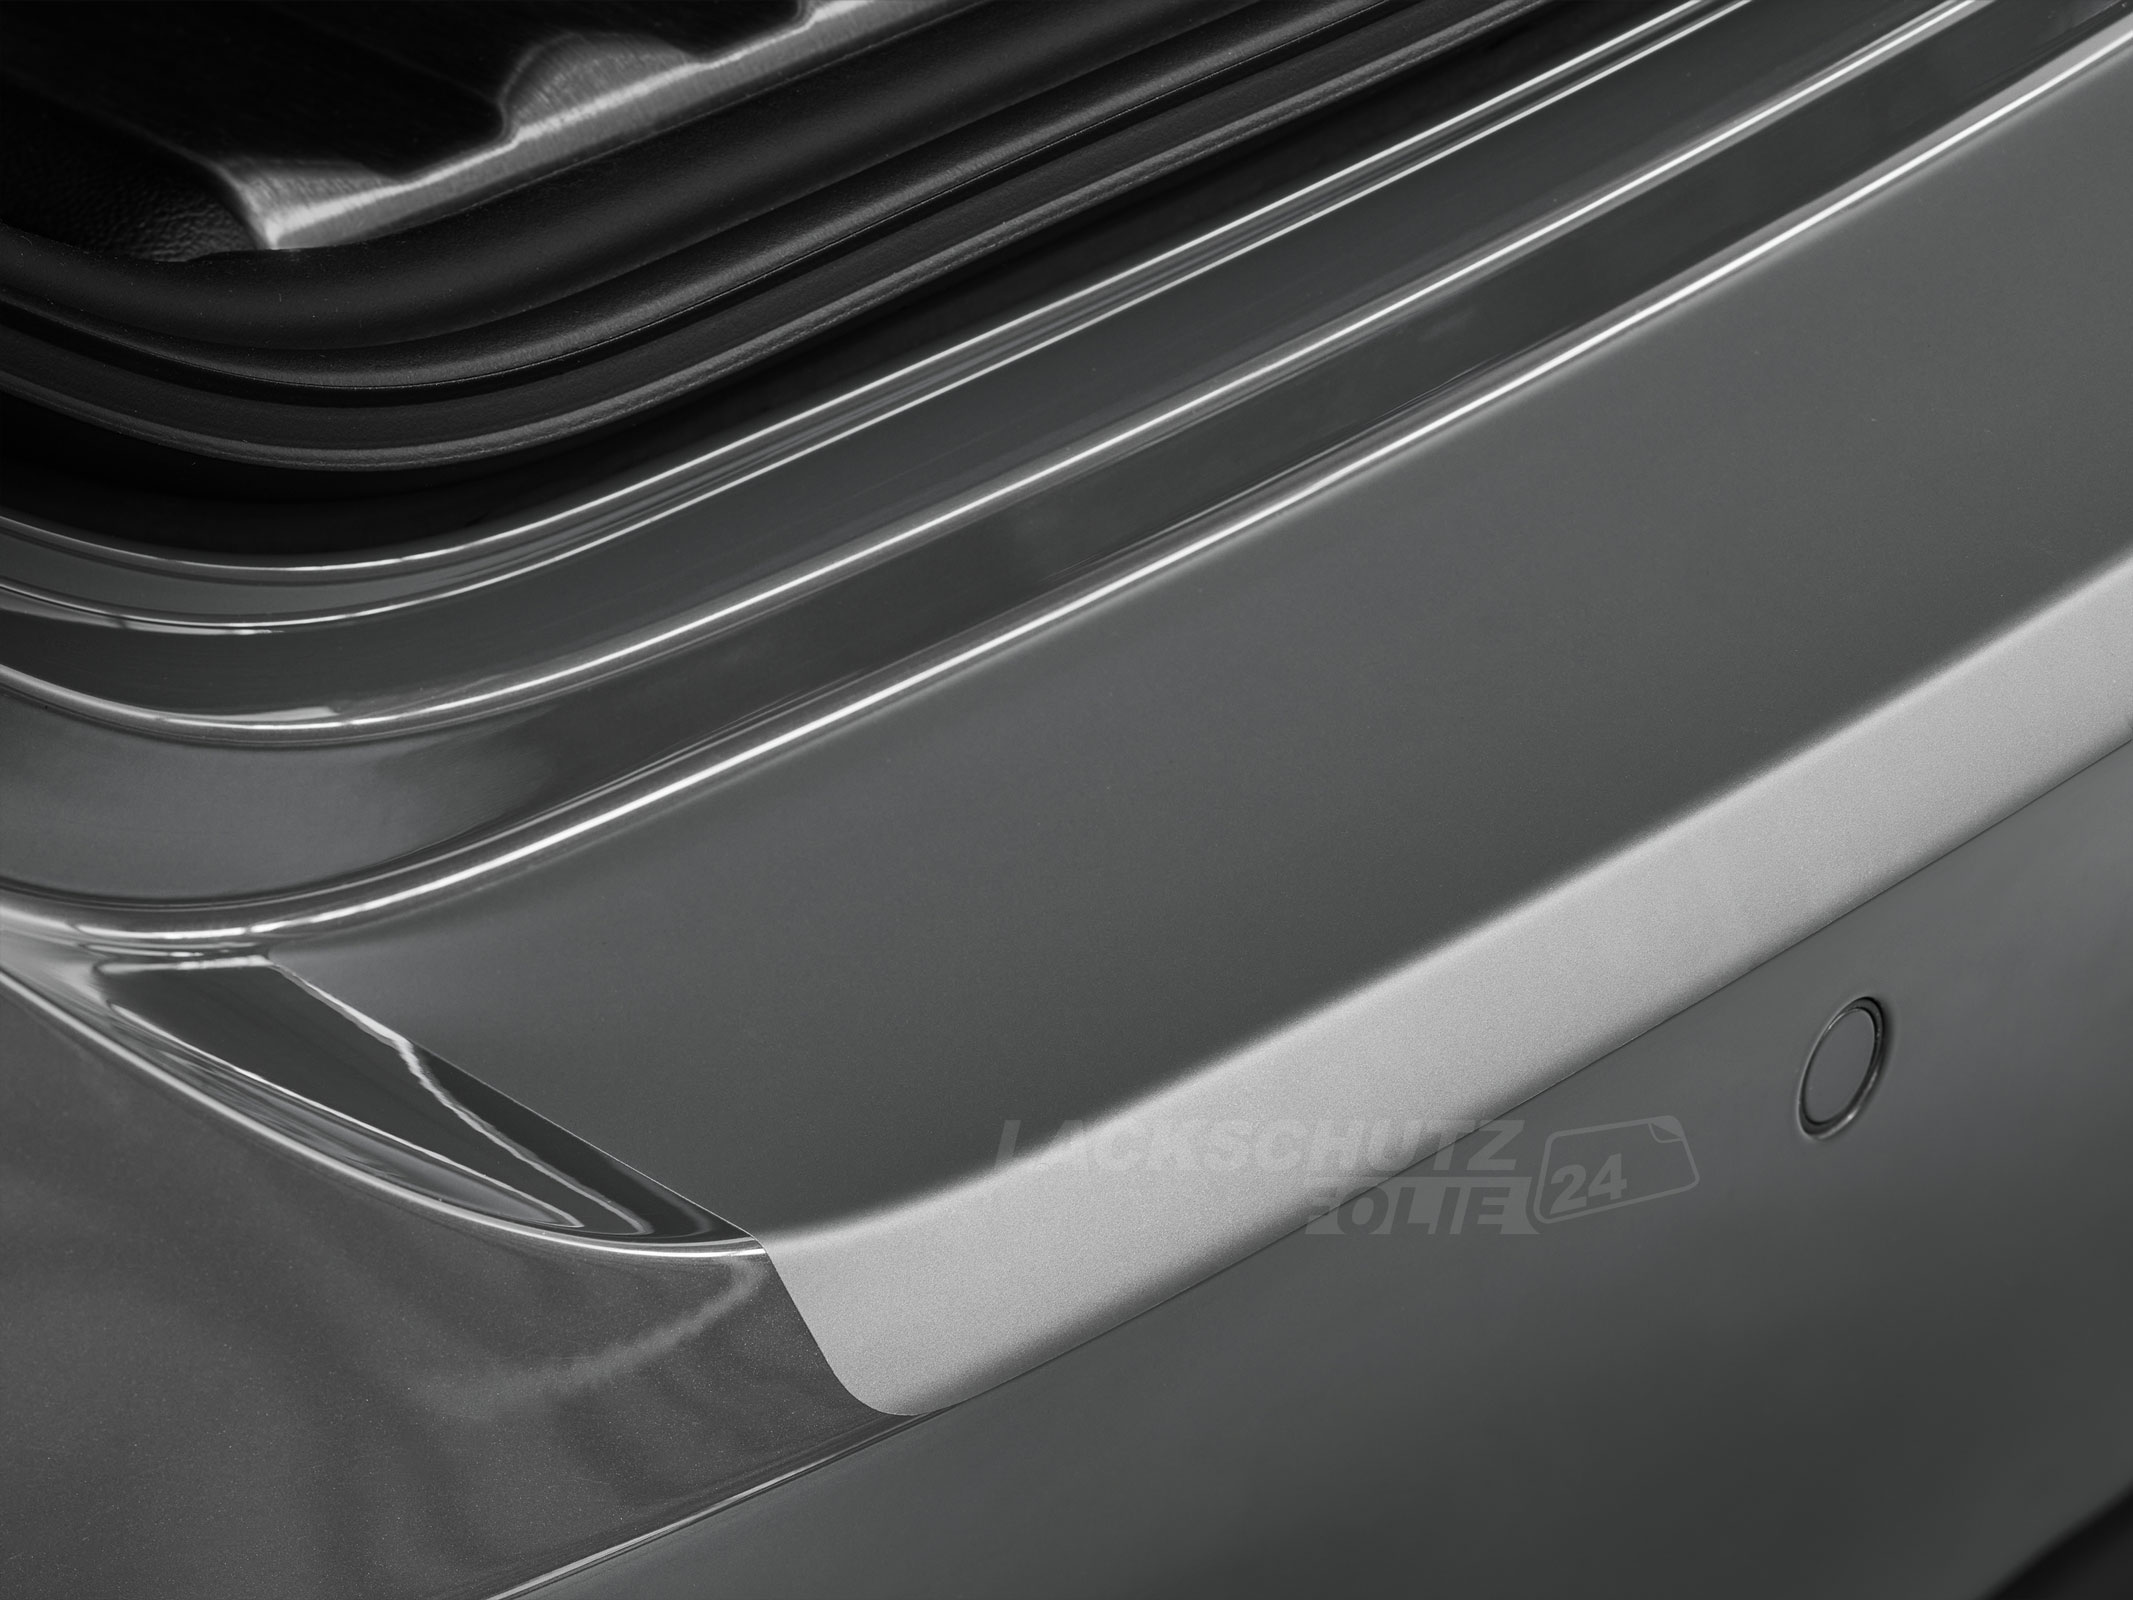 Ladekantenschutzfolie - Transparent Glatt MATT für Opel Insignia Grandsport / Limousine  Typ A, BJ 2008-2017